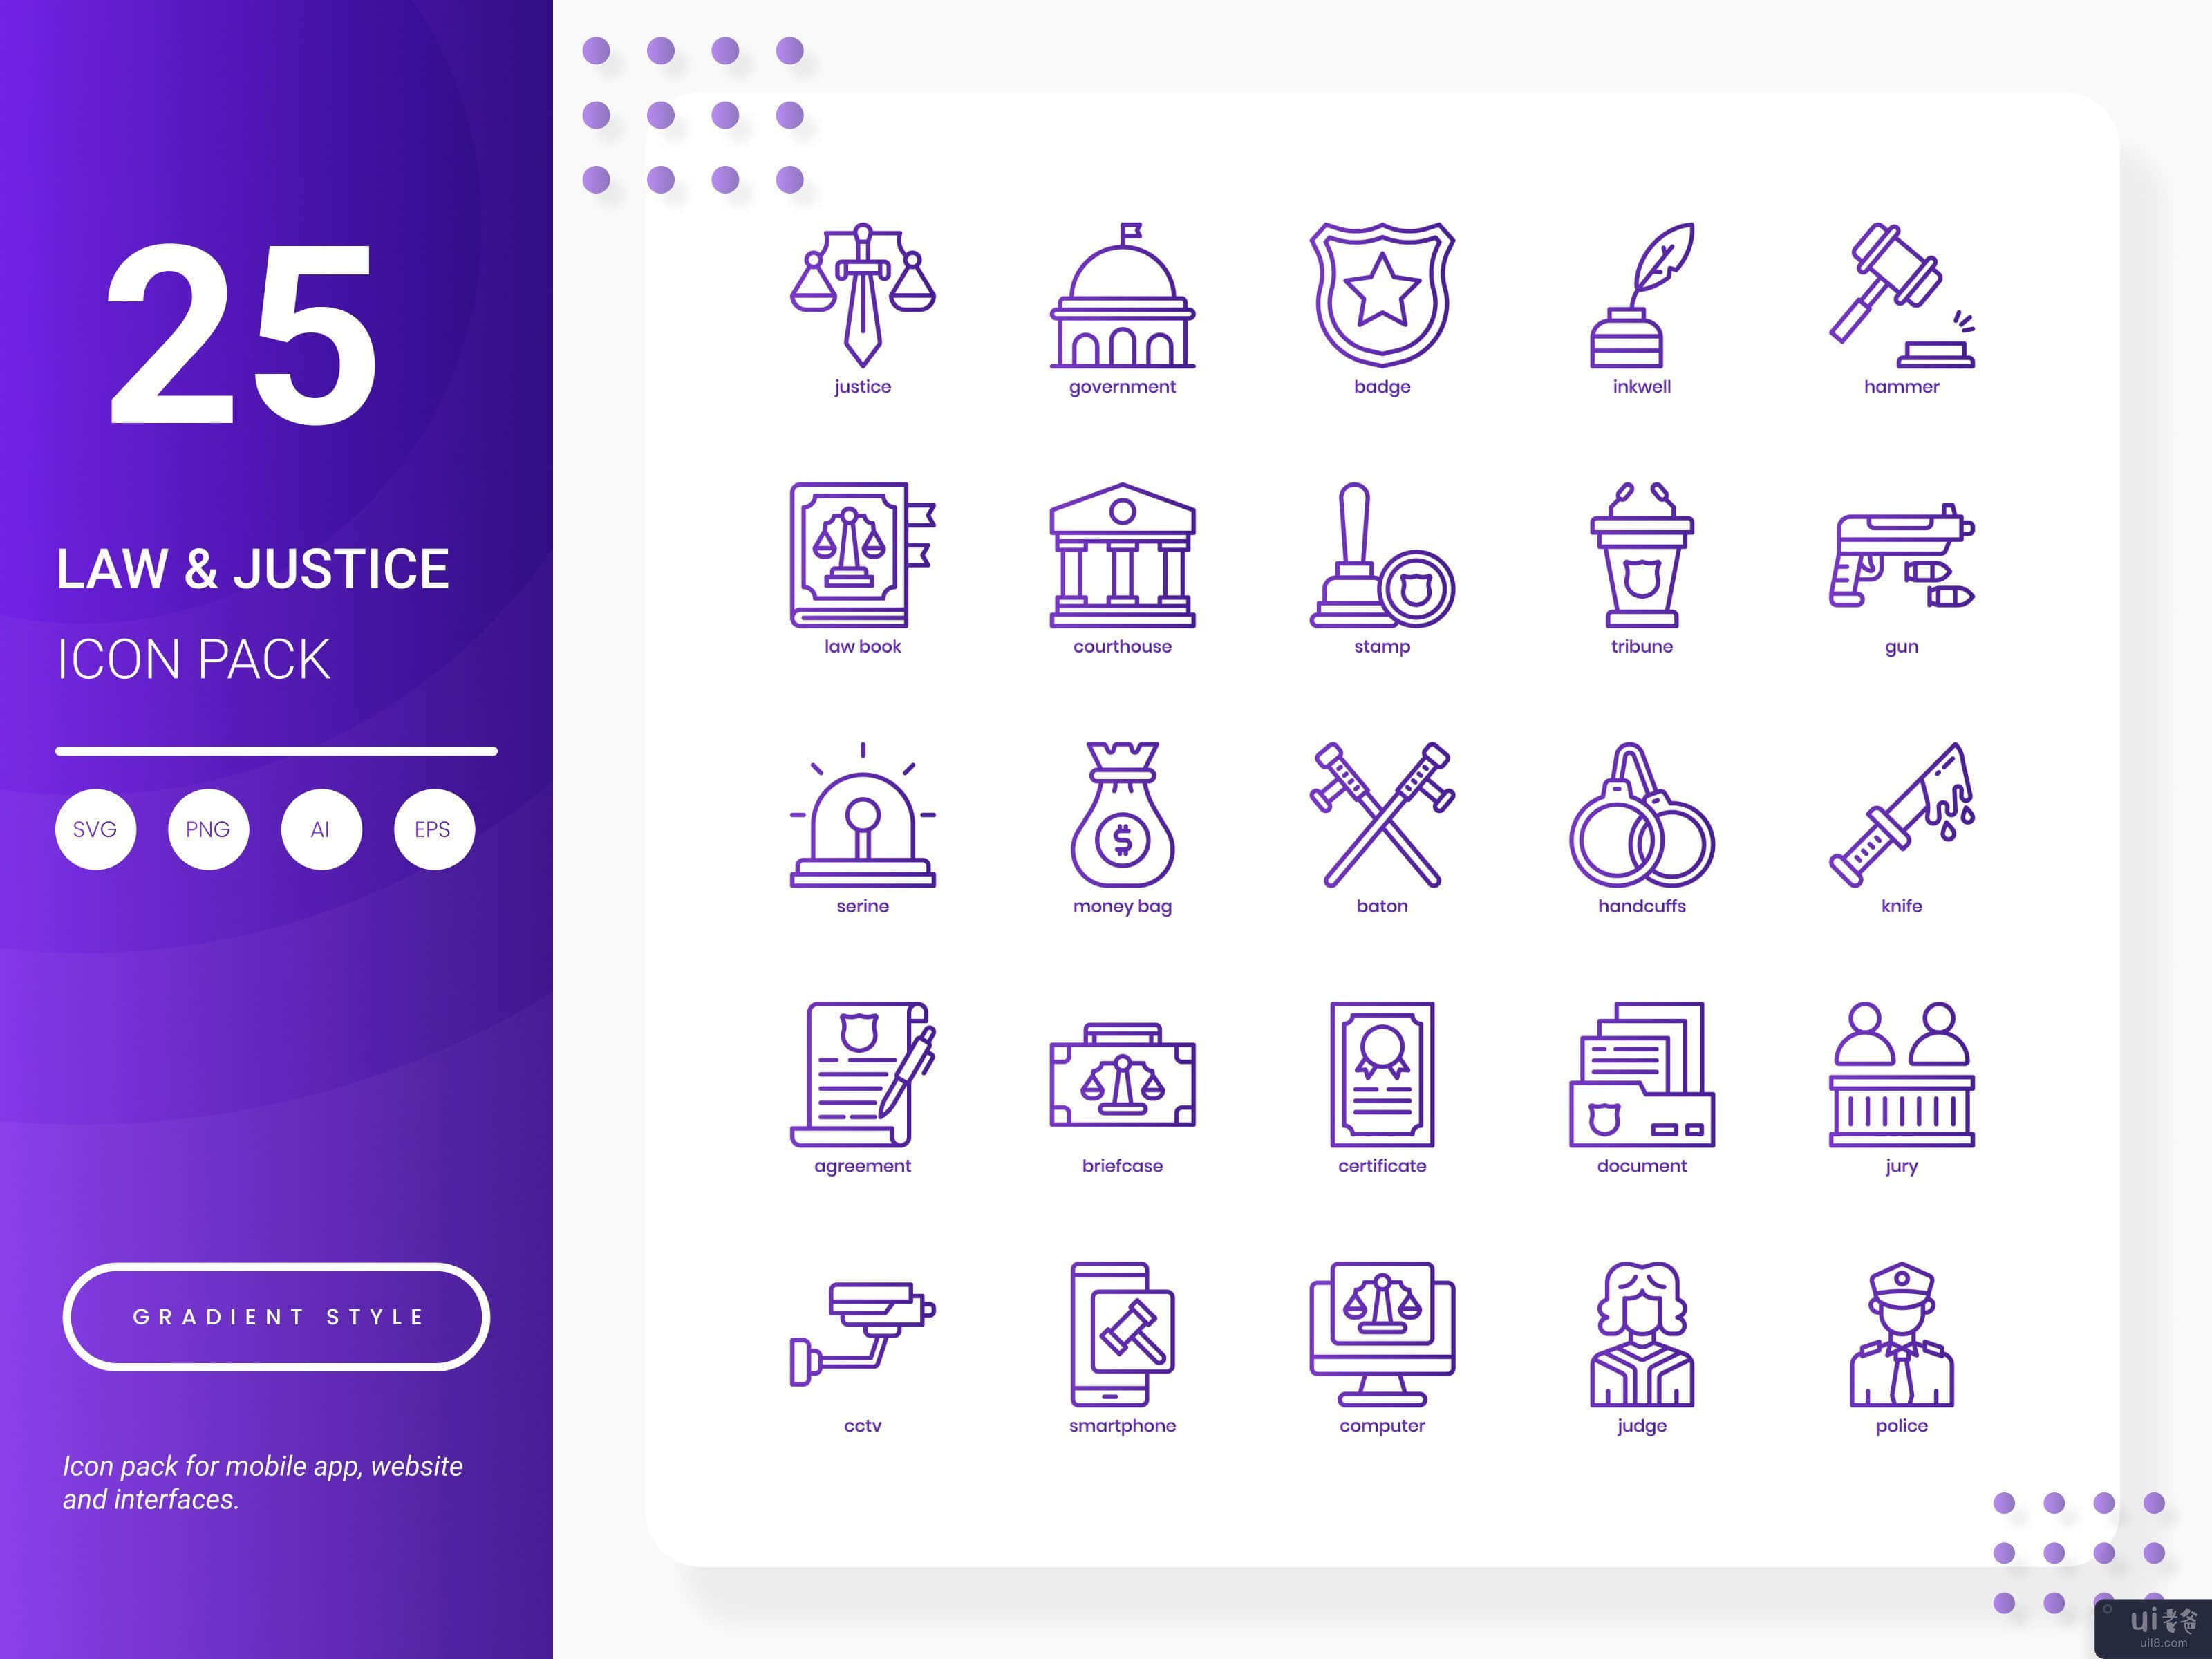 法律与正义图标包(Law and Justice Icon Pack)插图